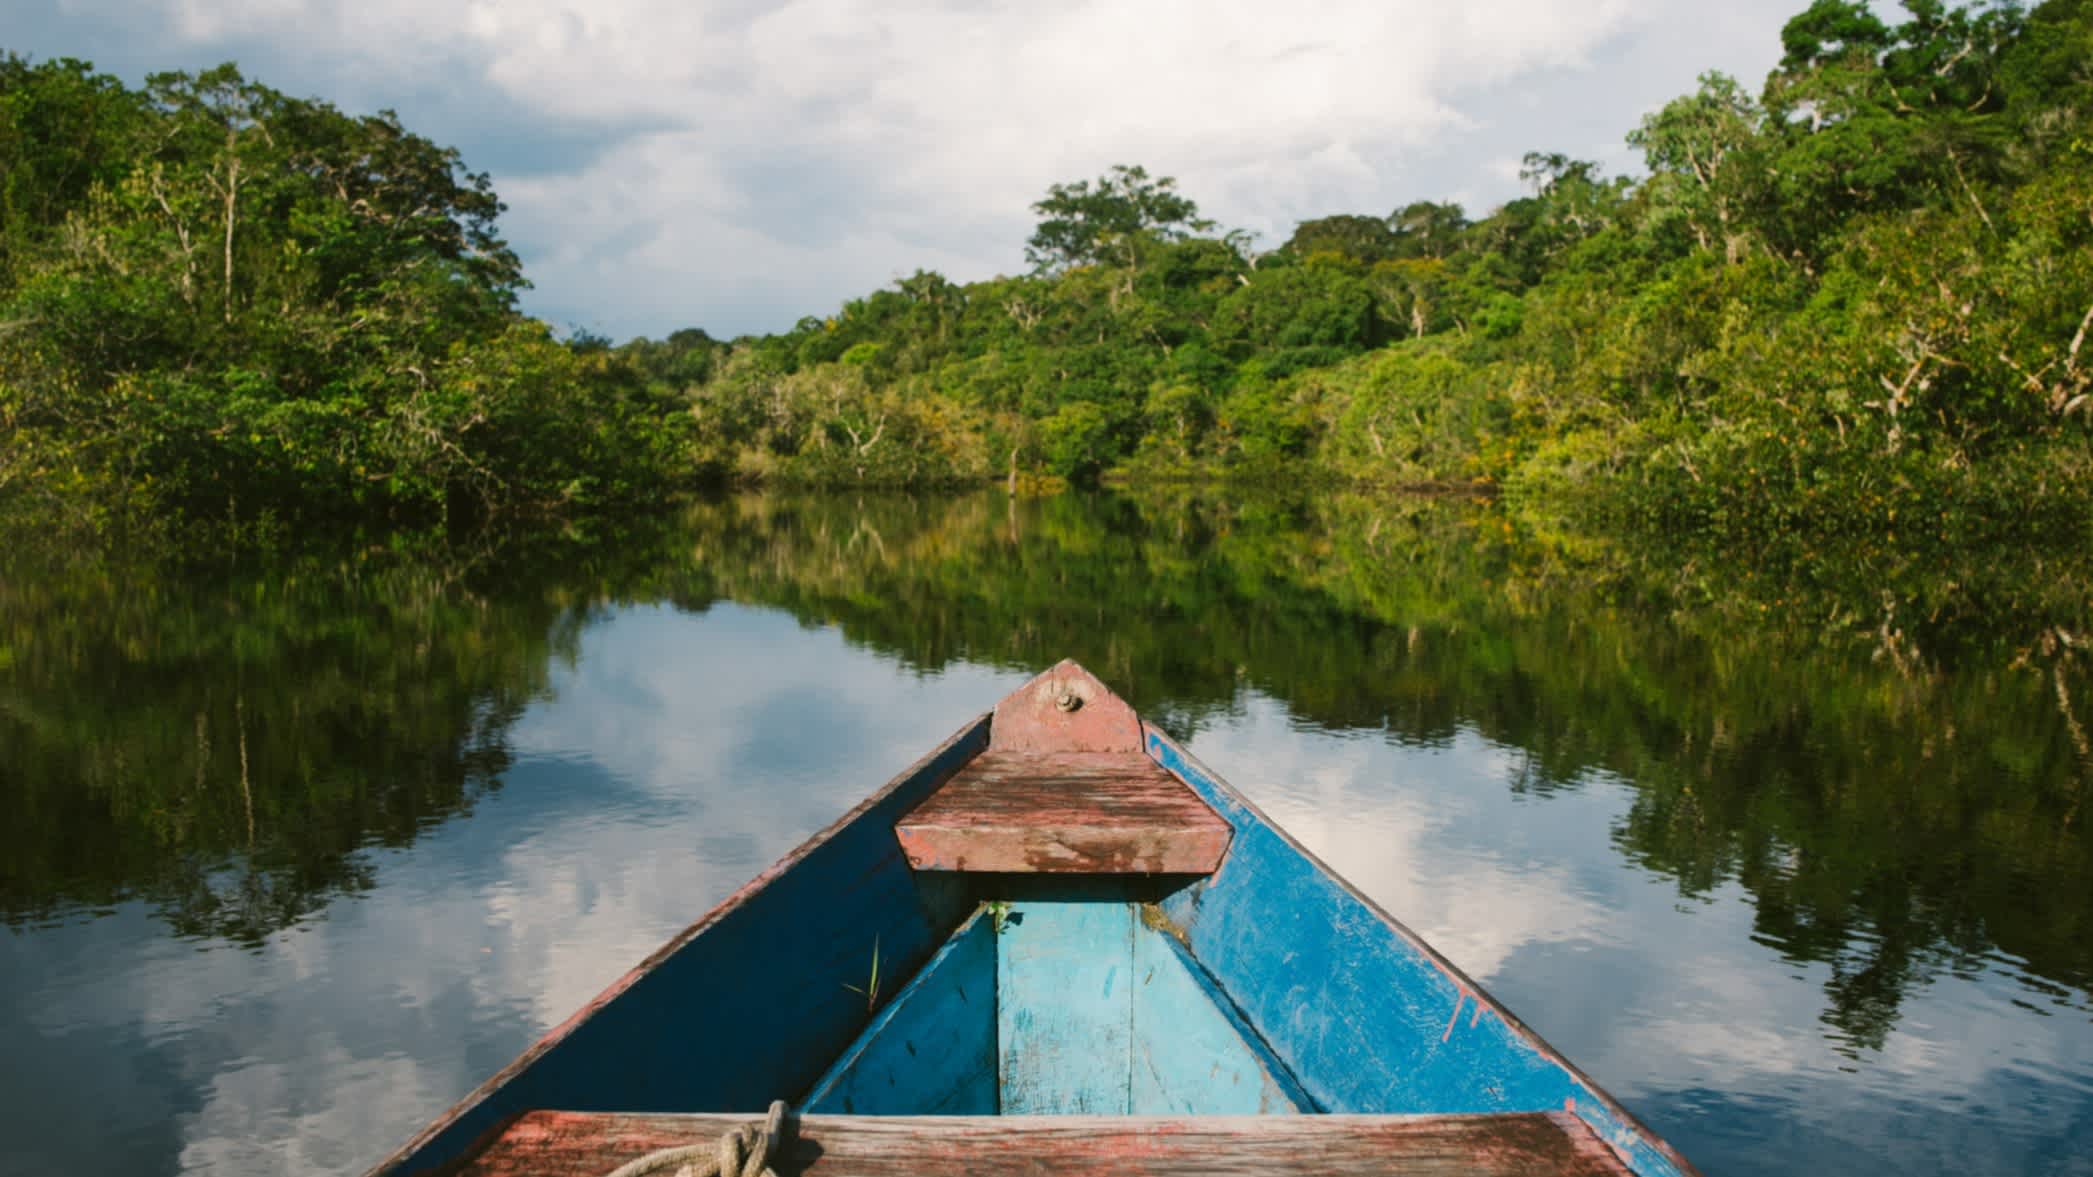 Kanufahrt auf dem Cuieiras-Fluss im brasilianischen Amazonas-Dschungel